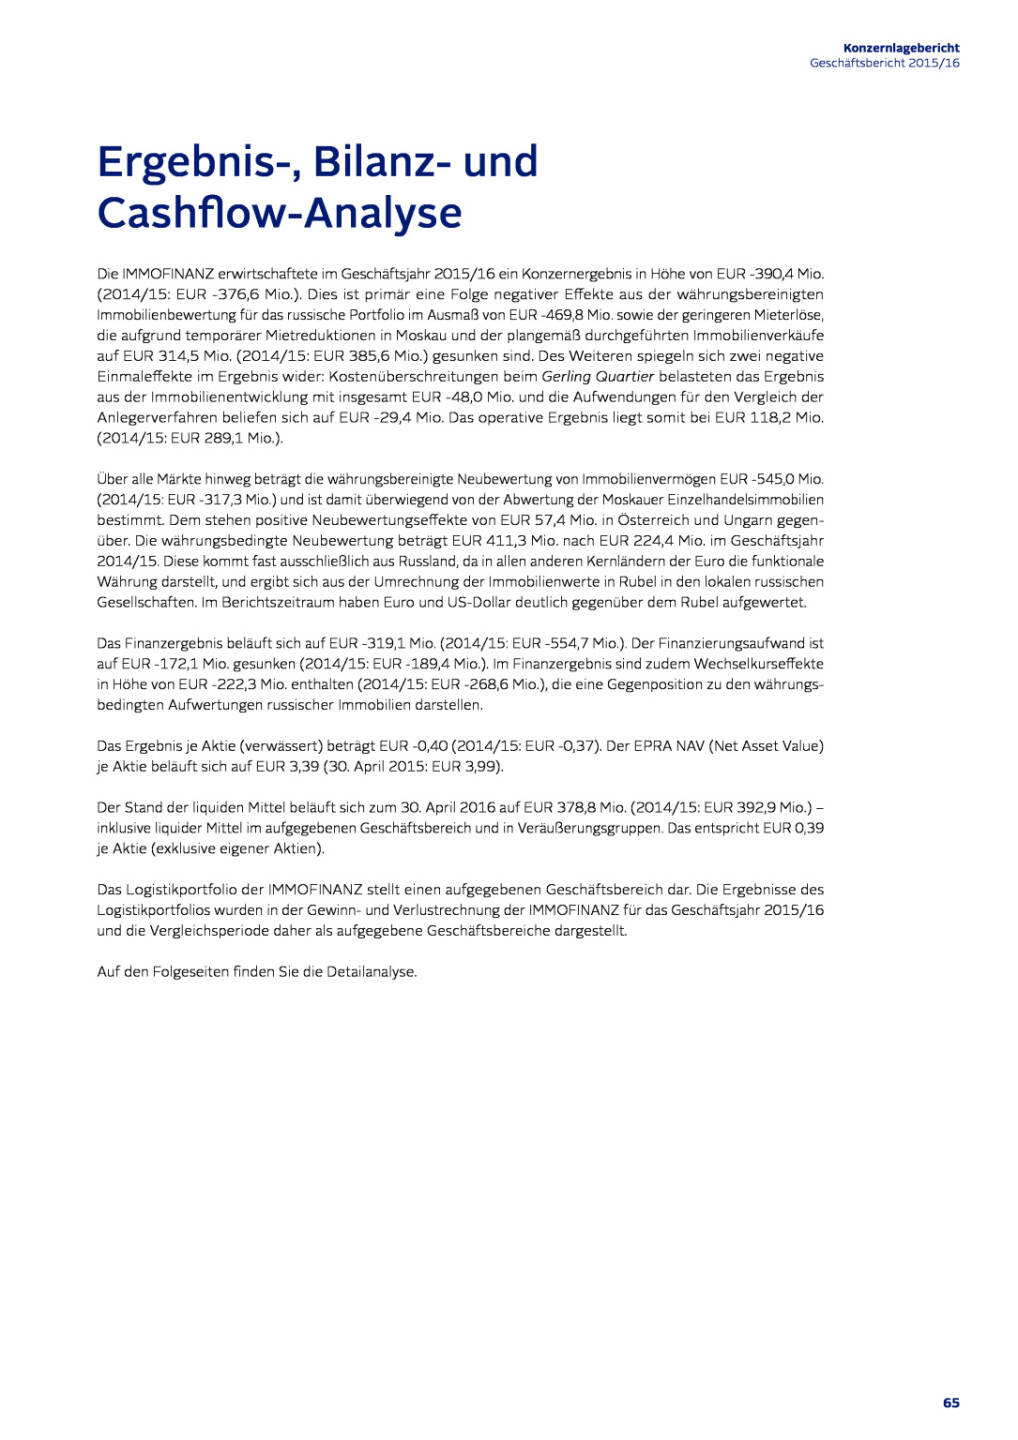 Immofinanz: Ergebnis-, Bilanz- und Cashflow-Analyse, Seite 1/6, komplettes Dokument unter http://boerse-social.com/static/uploads/file_1508_immofinanz_ergebnis-_bilanz-_und_cashflow-analyse.pdf